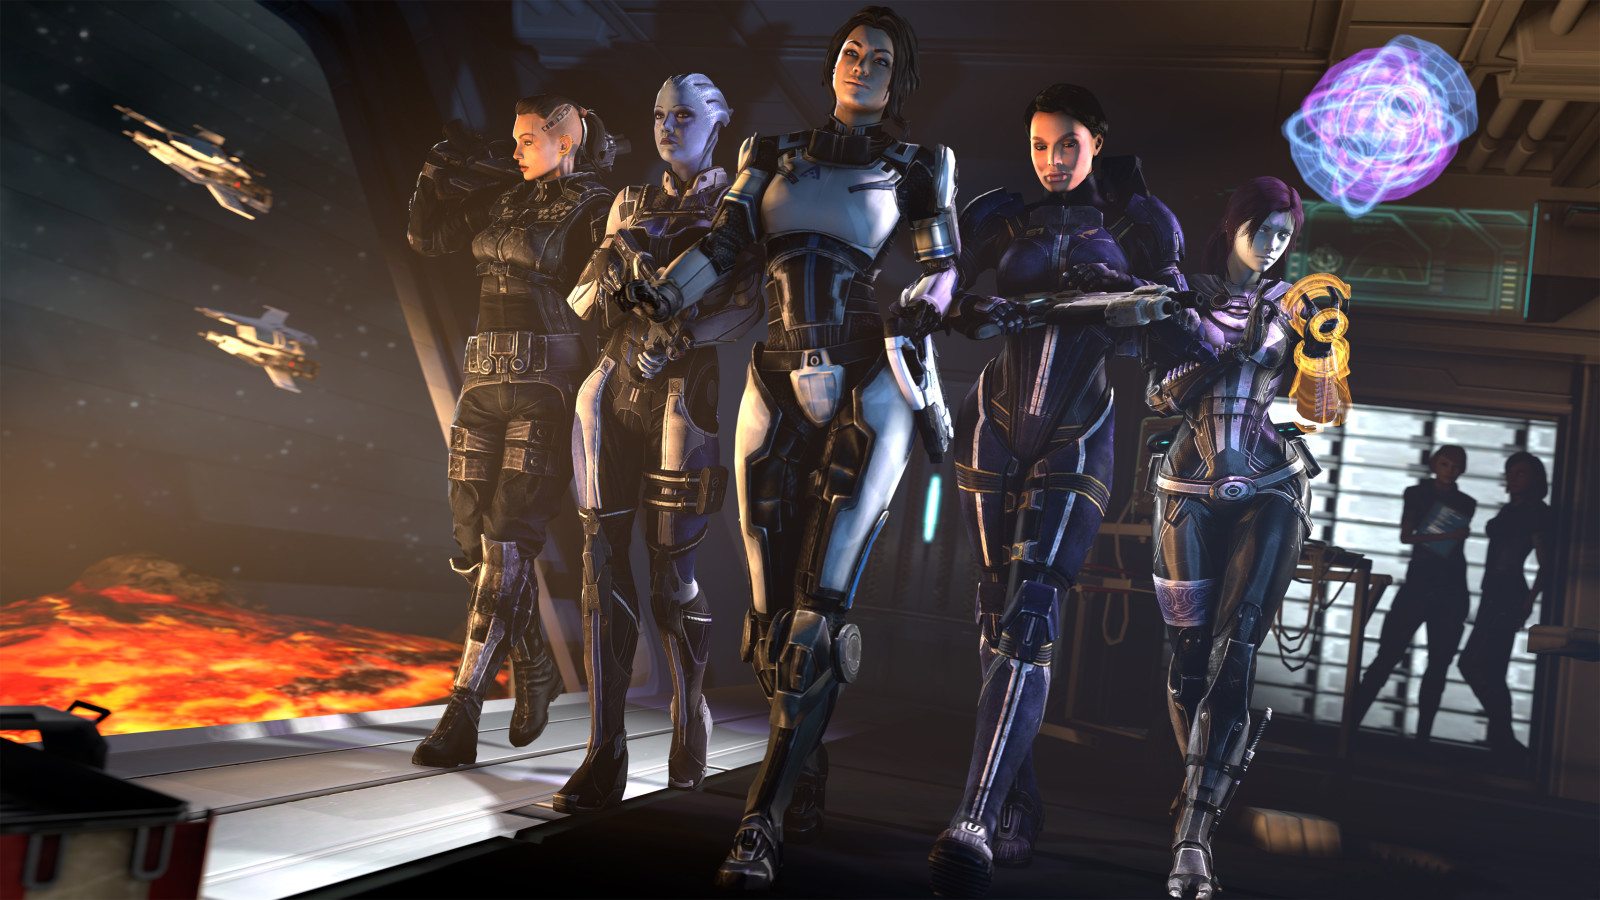 สาว ๆ, Mass Effect, ช่องเสียบ, แอชลีย์วิลเลียมส์, asari, Glubinny Zorah nar Rayya, Liara T soni, Quarian